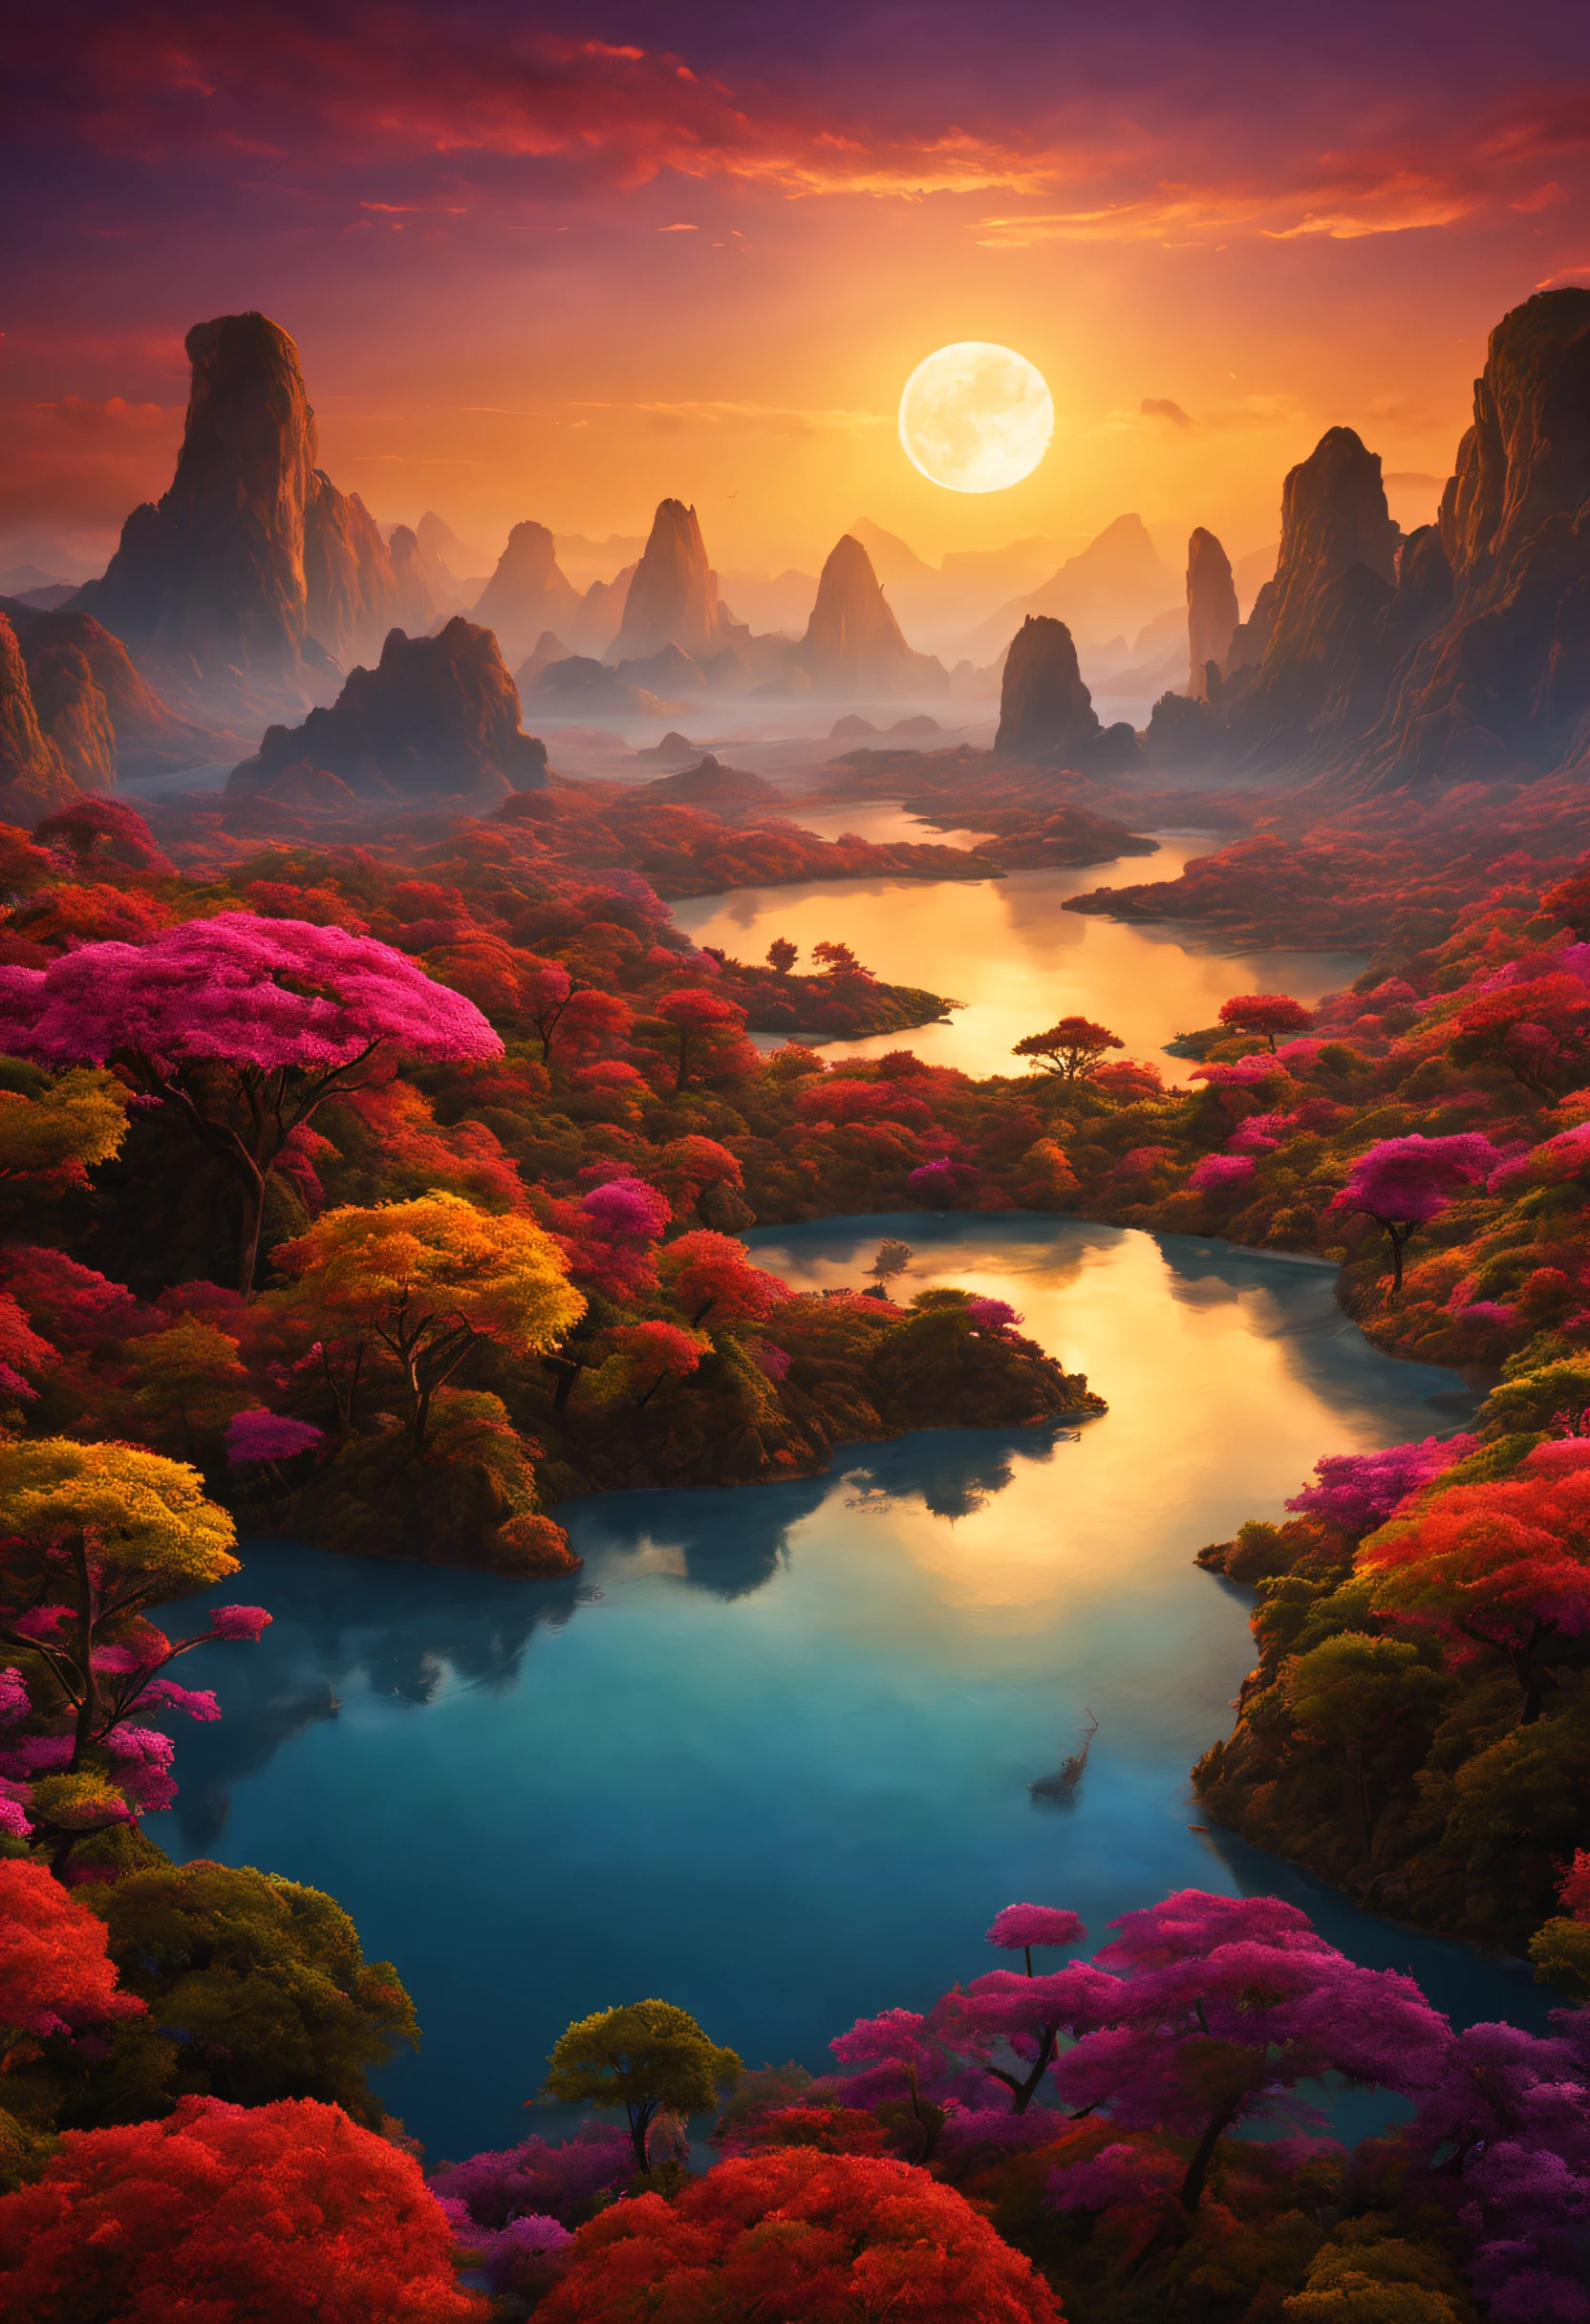 Un magnifique paysage imaginaire magnifique sur une planète exotique avec beaucoup de couchers de soleil colorés et un paysage extraordinaire.